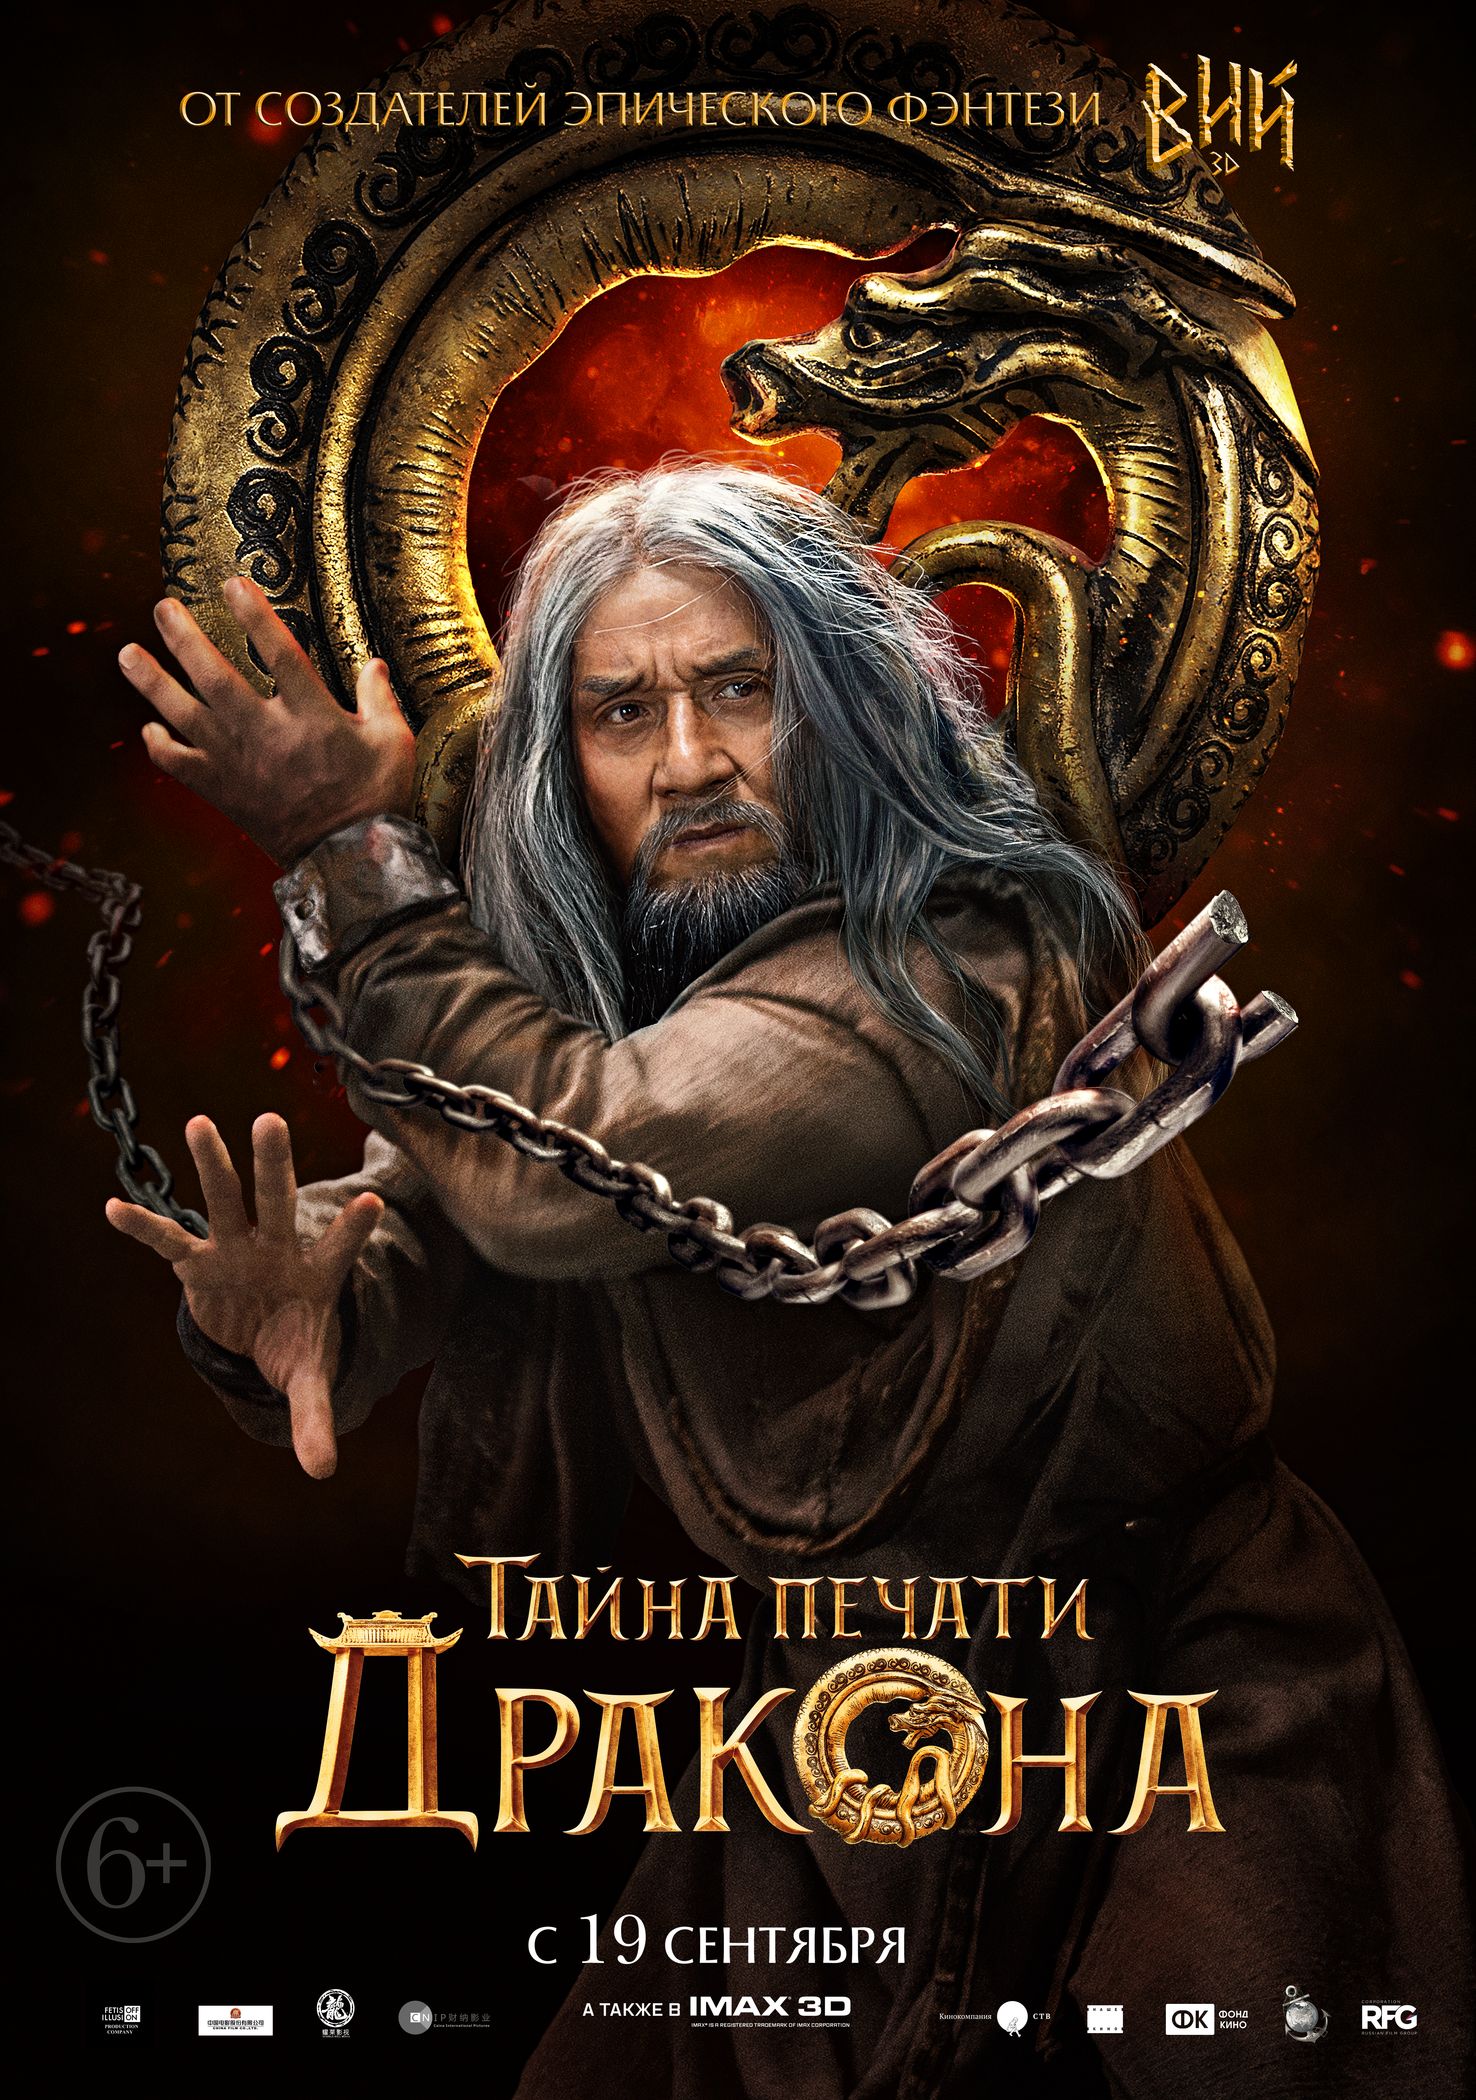 Тайна Печати дракона, постер № 11